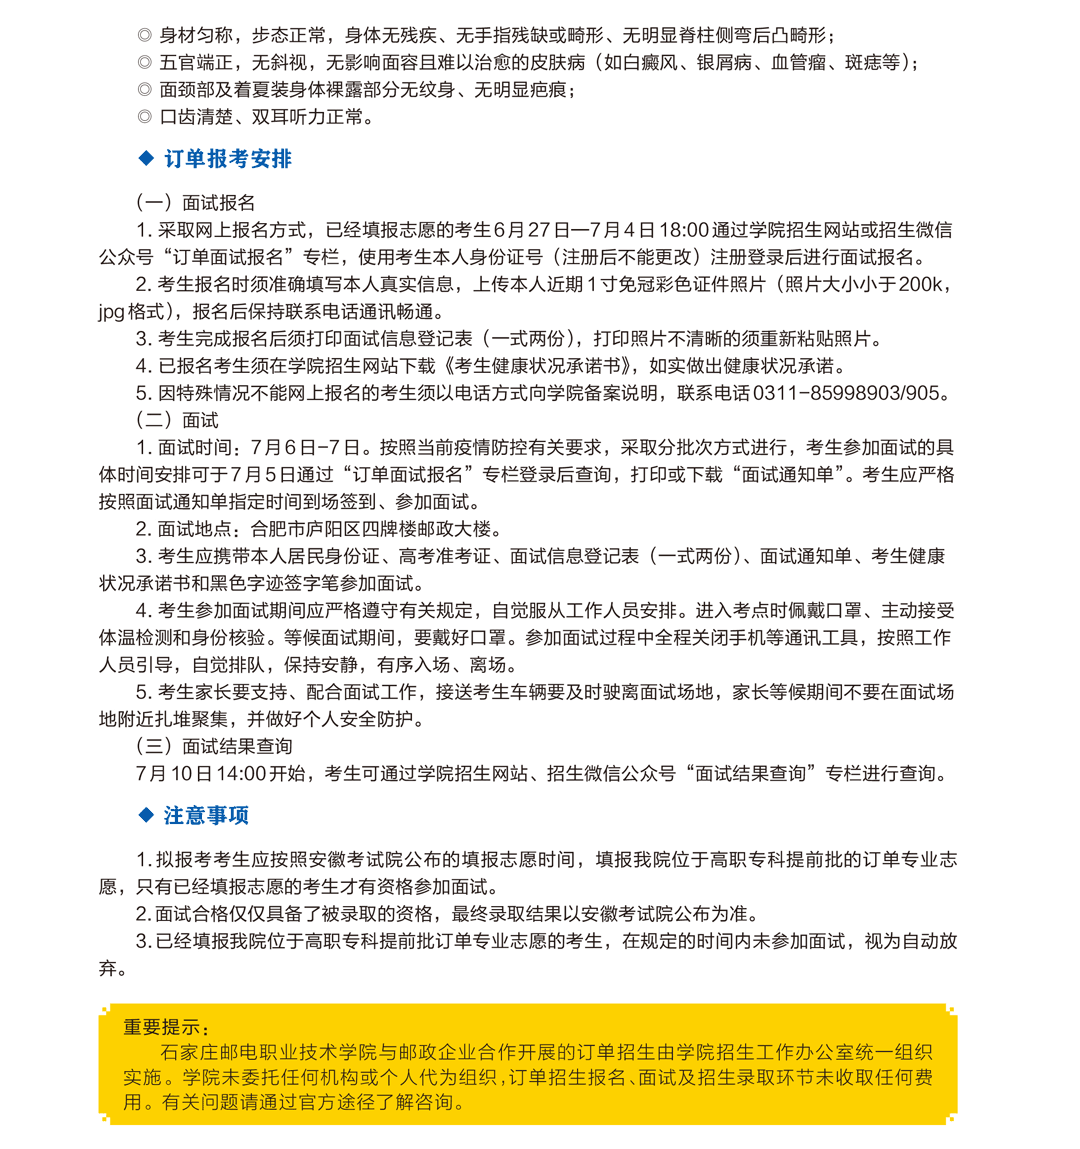 2021安徽邮政订单招生简章-4.png